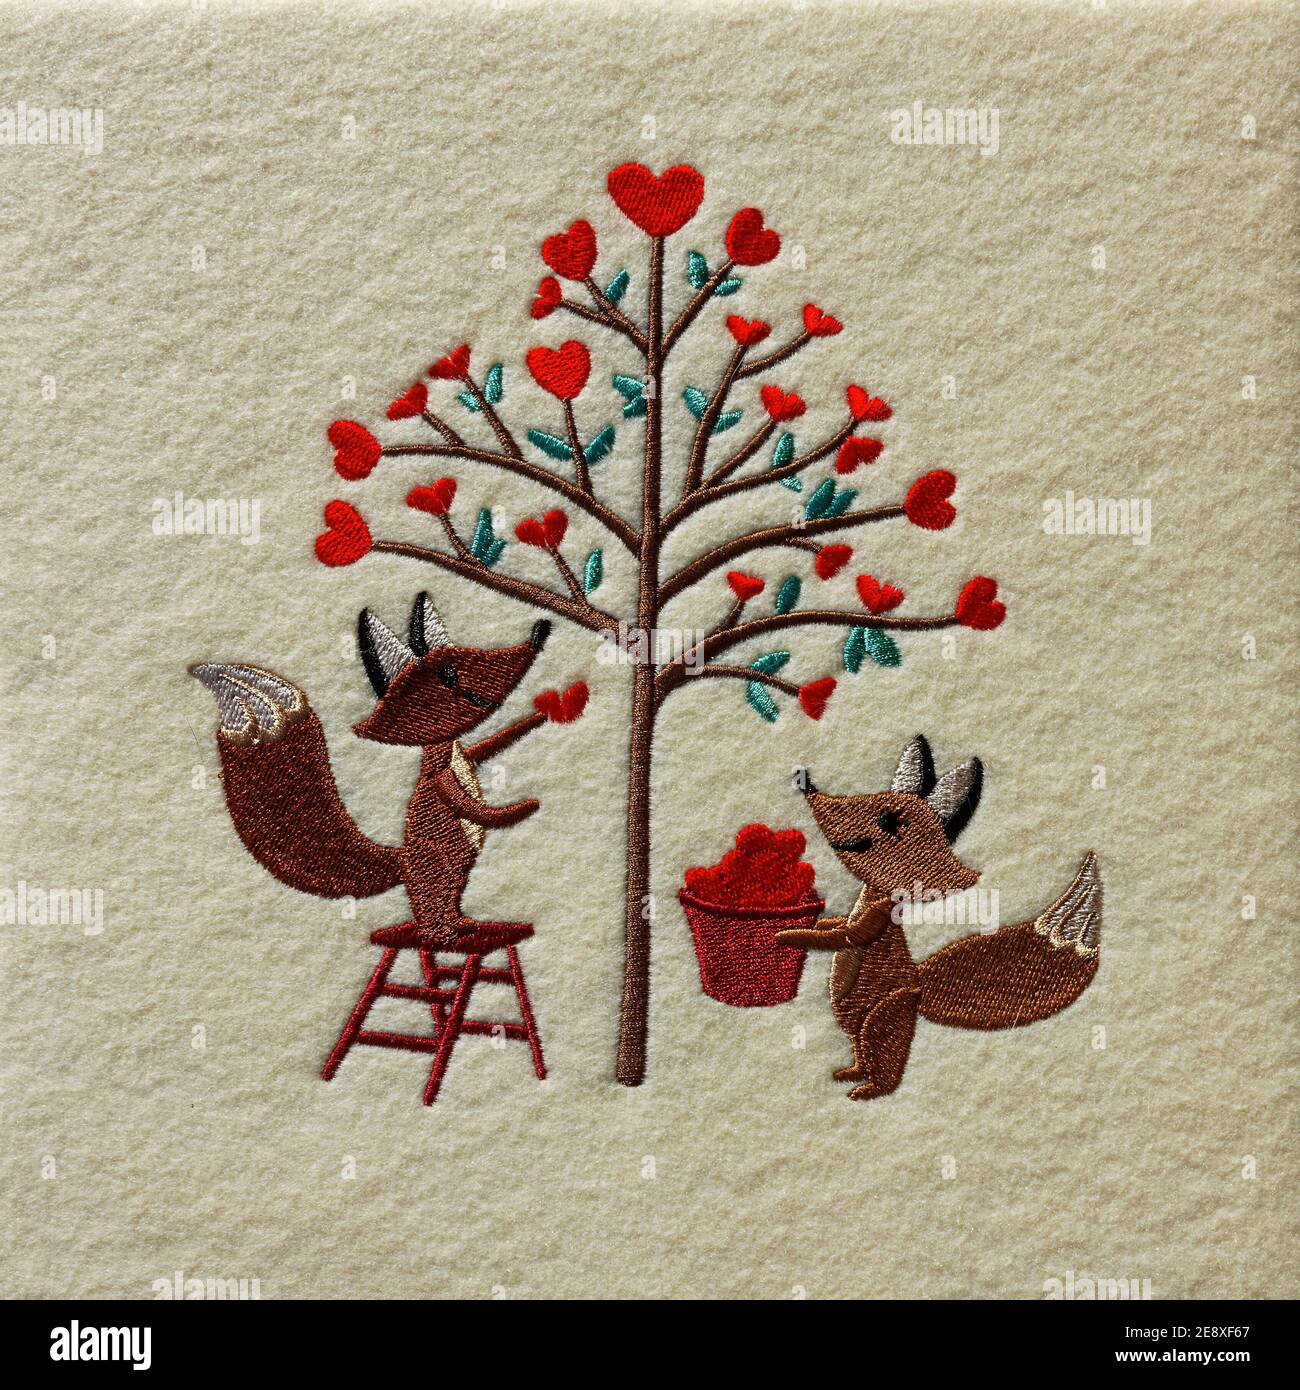 Broderie de la Saint-Valentin; 2 renards tailler l'arbre avec les coeurs rouges; mignon; amour; artisanat; tissu en feutre crème, PR Banque D'Images